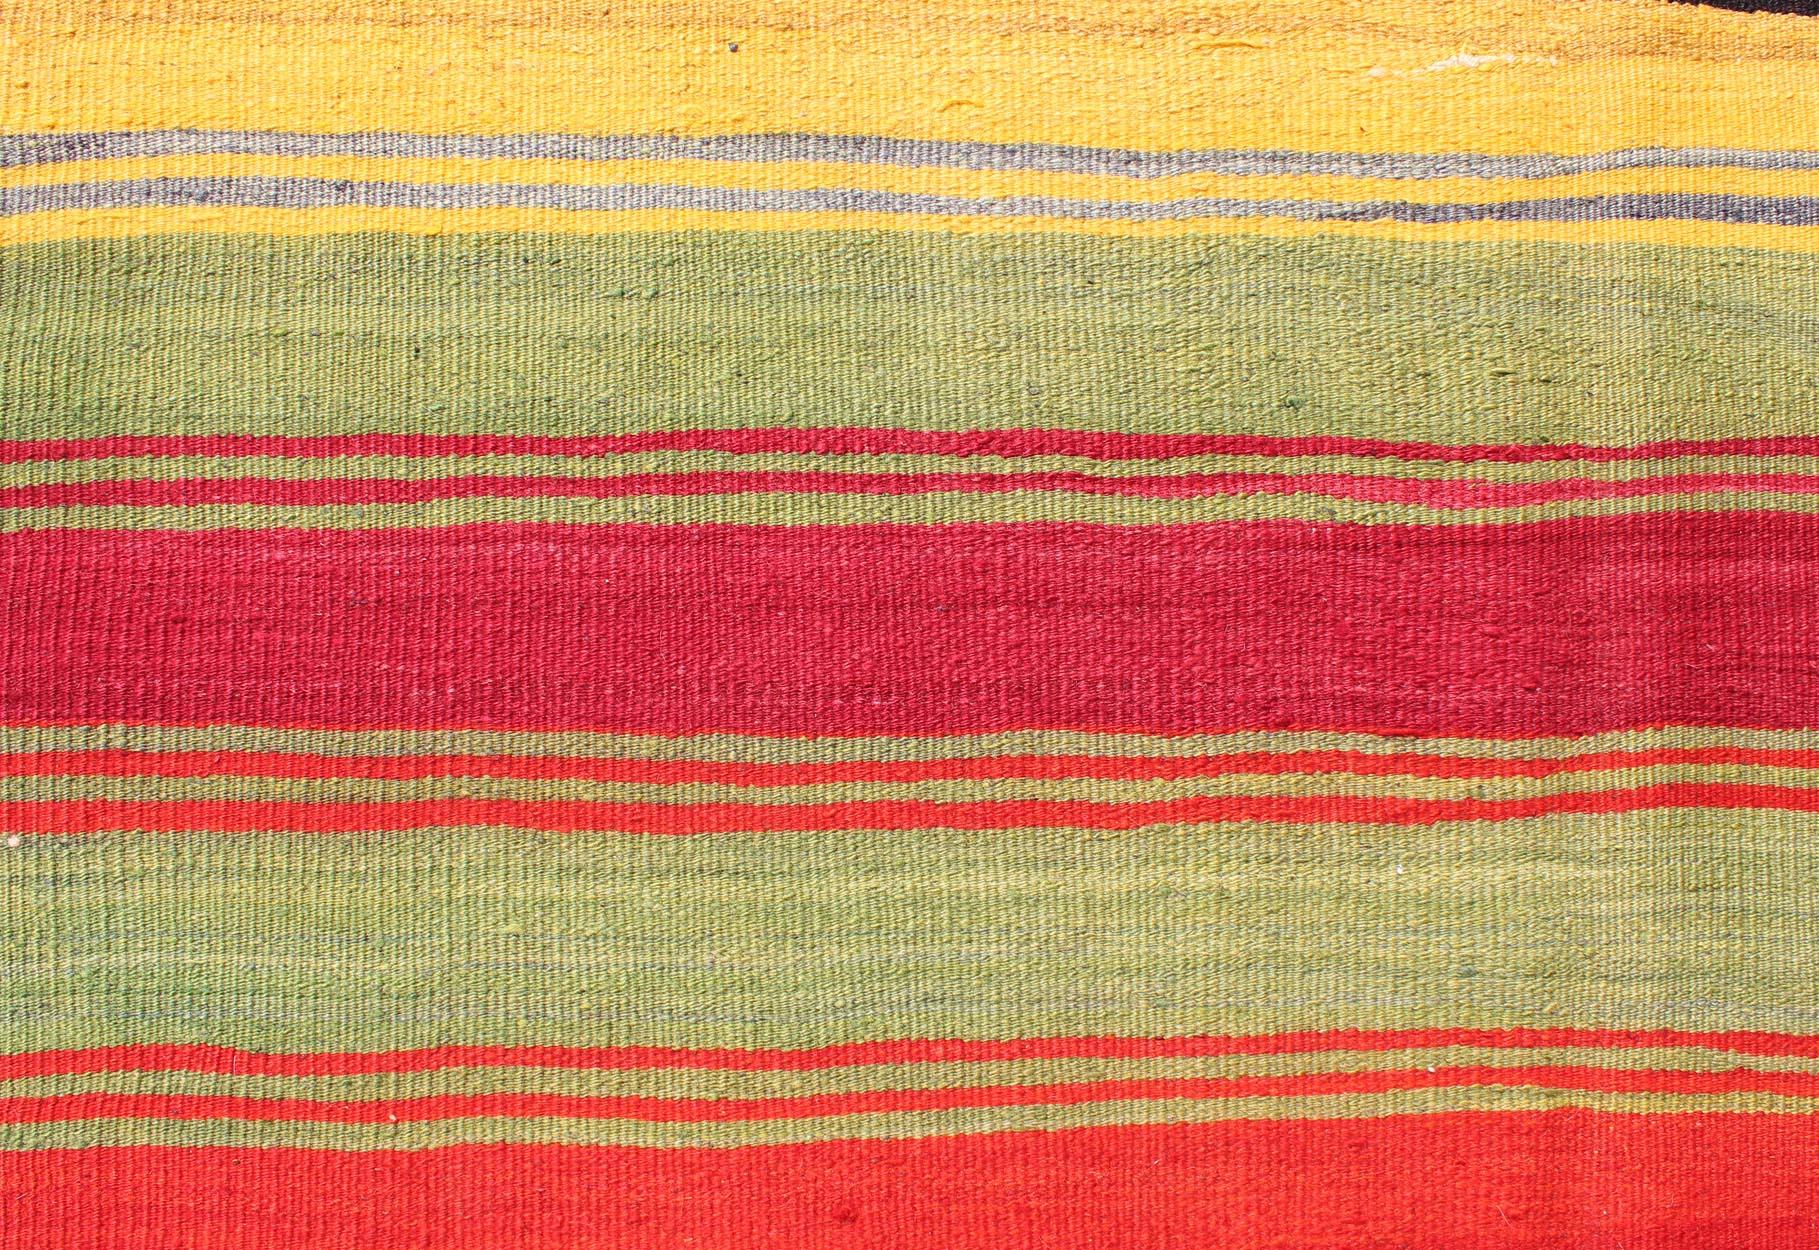 Colorful Vintage Turkish Kilim Rug with Subtle Tribal Shapes and Stripes Design For Sale 1